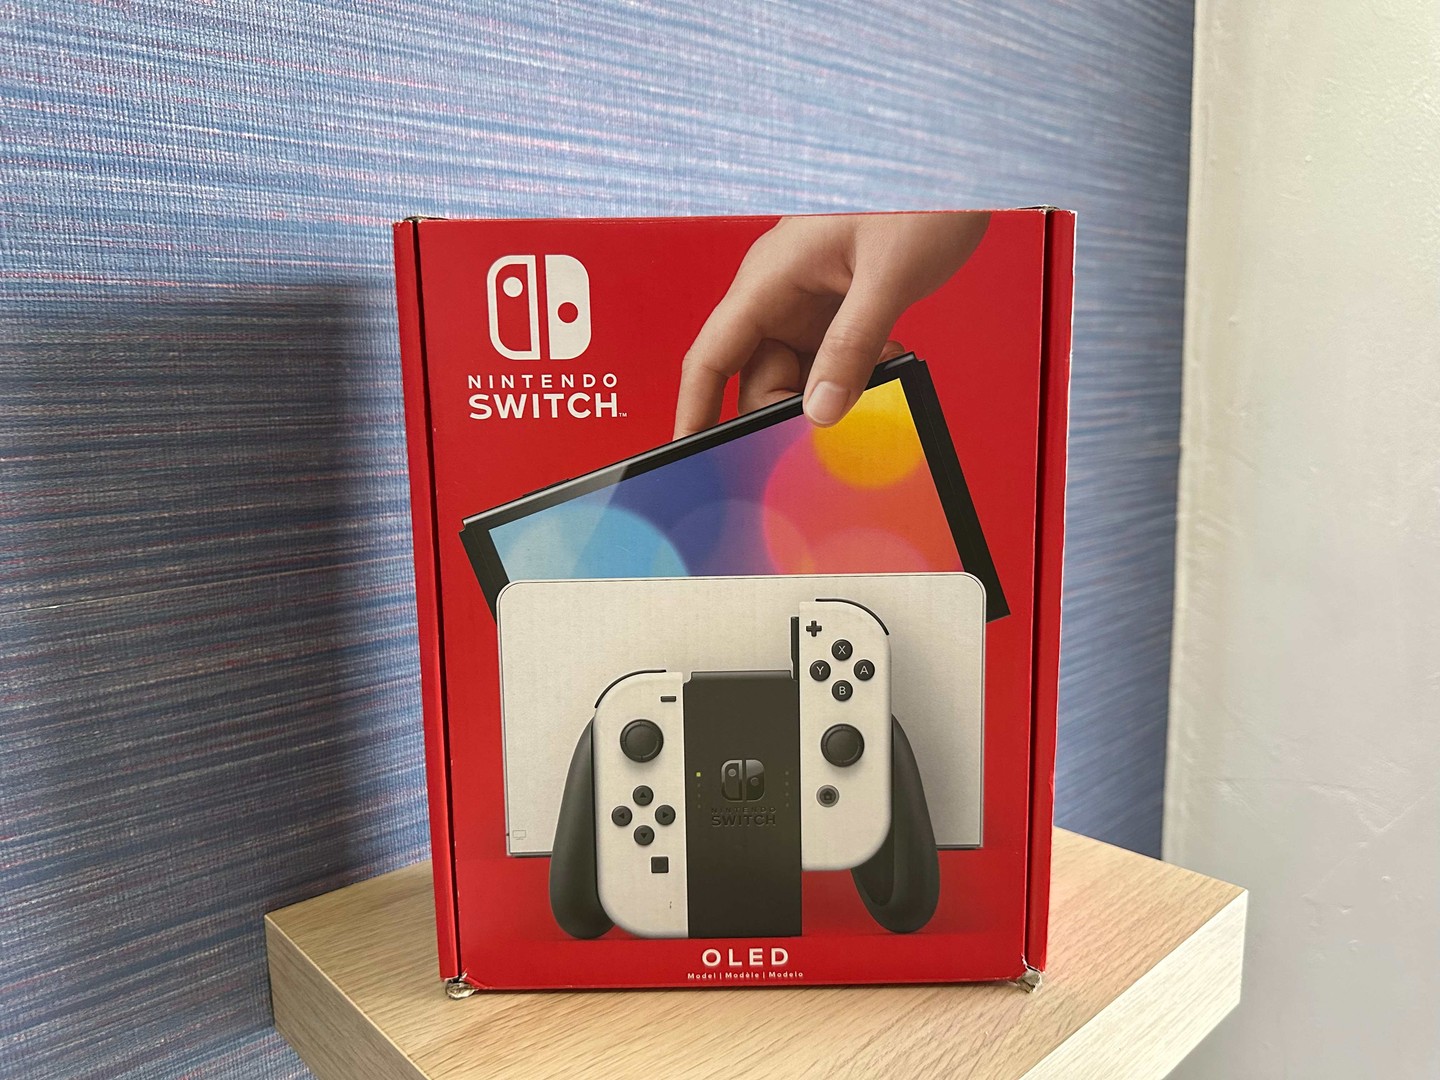 consolas y videojuegos - Vendo Nintendo Switch OLED Nuevo Sellado , Garantía ,Originales RD$ 20,500 NEG